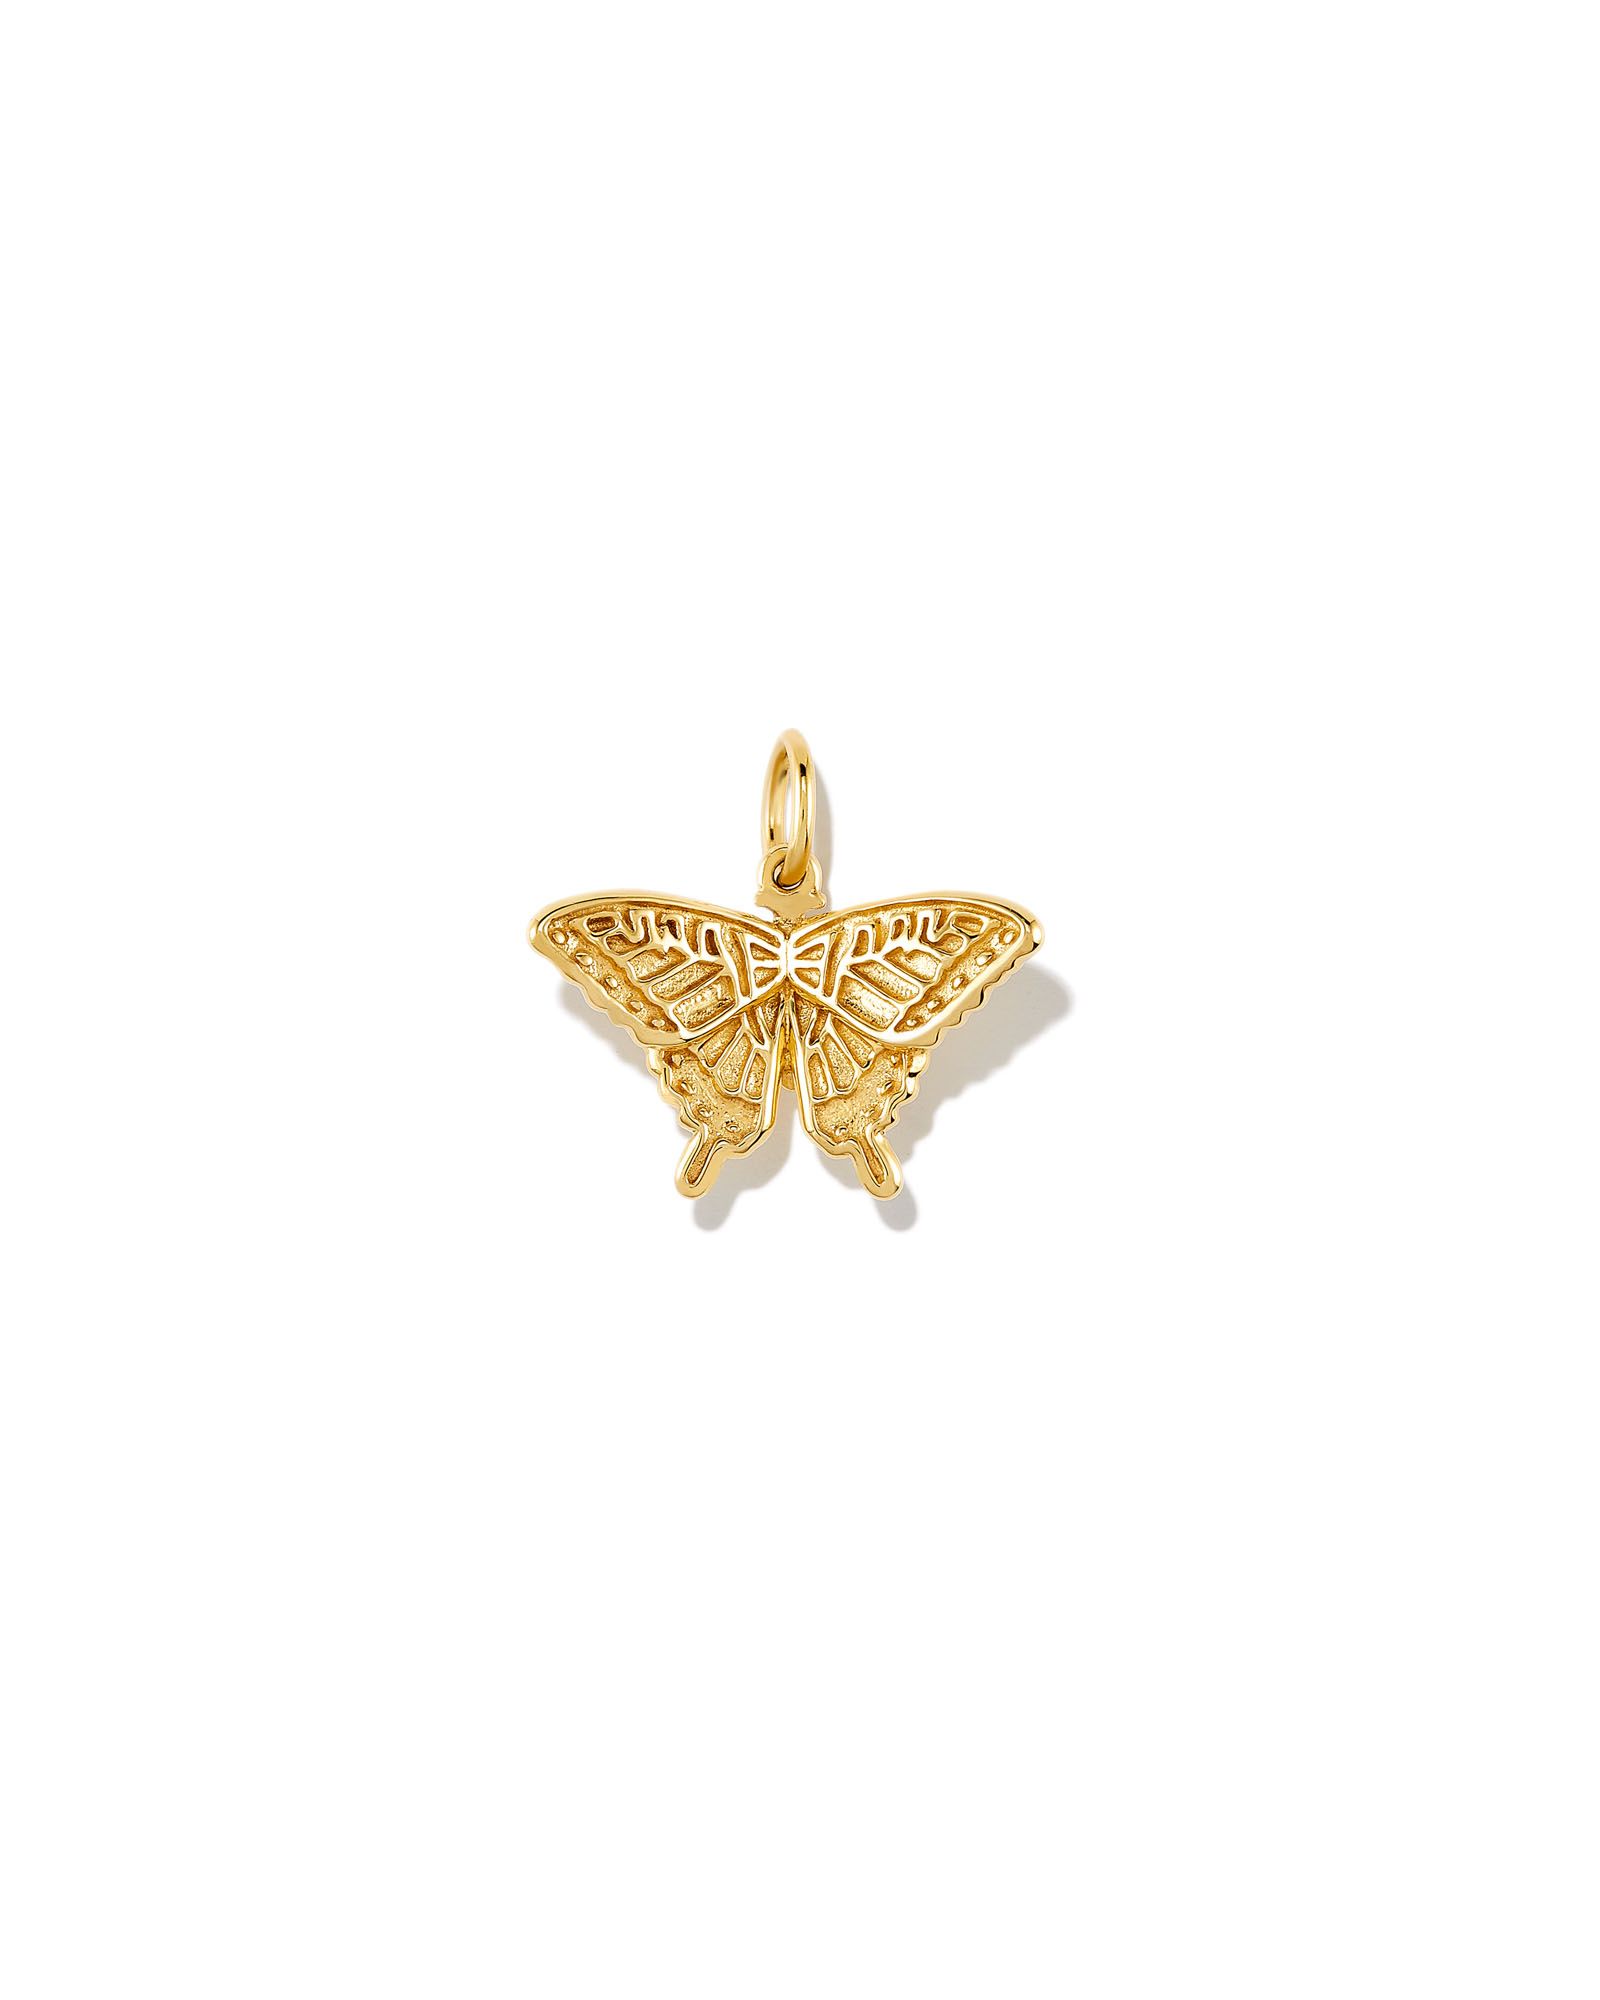 Butterfly Charm in 18k Gold Vermeil | Kendra Scott